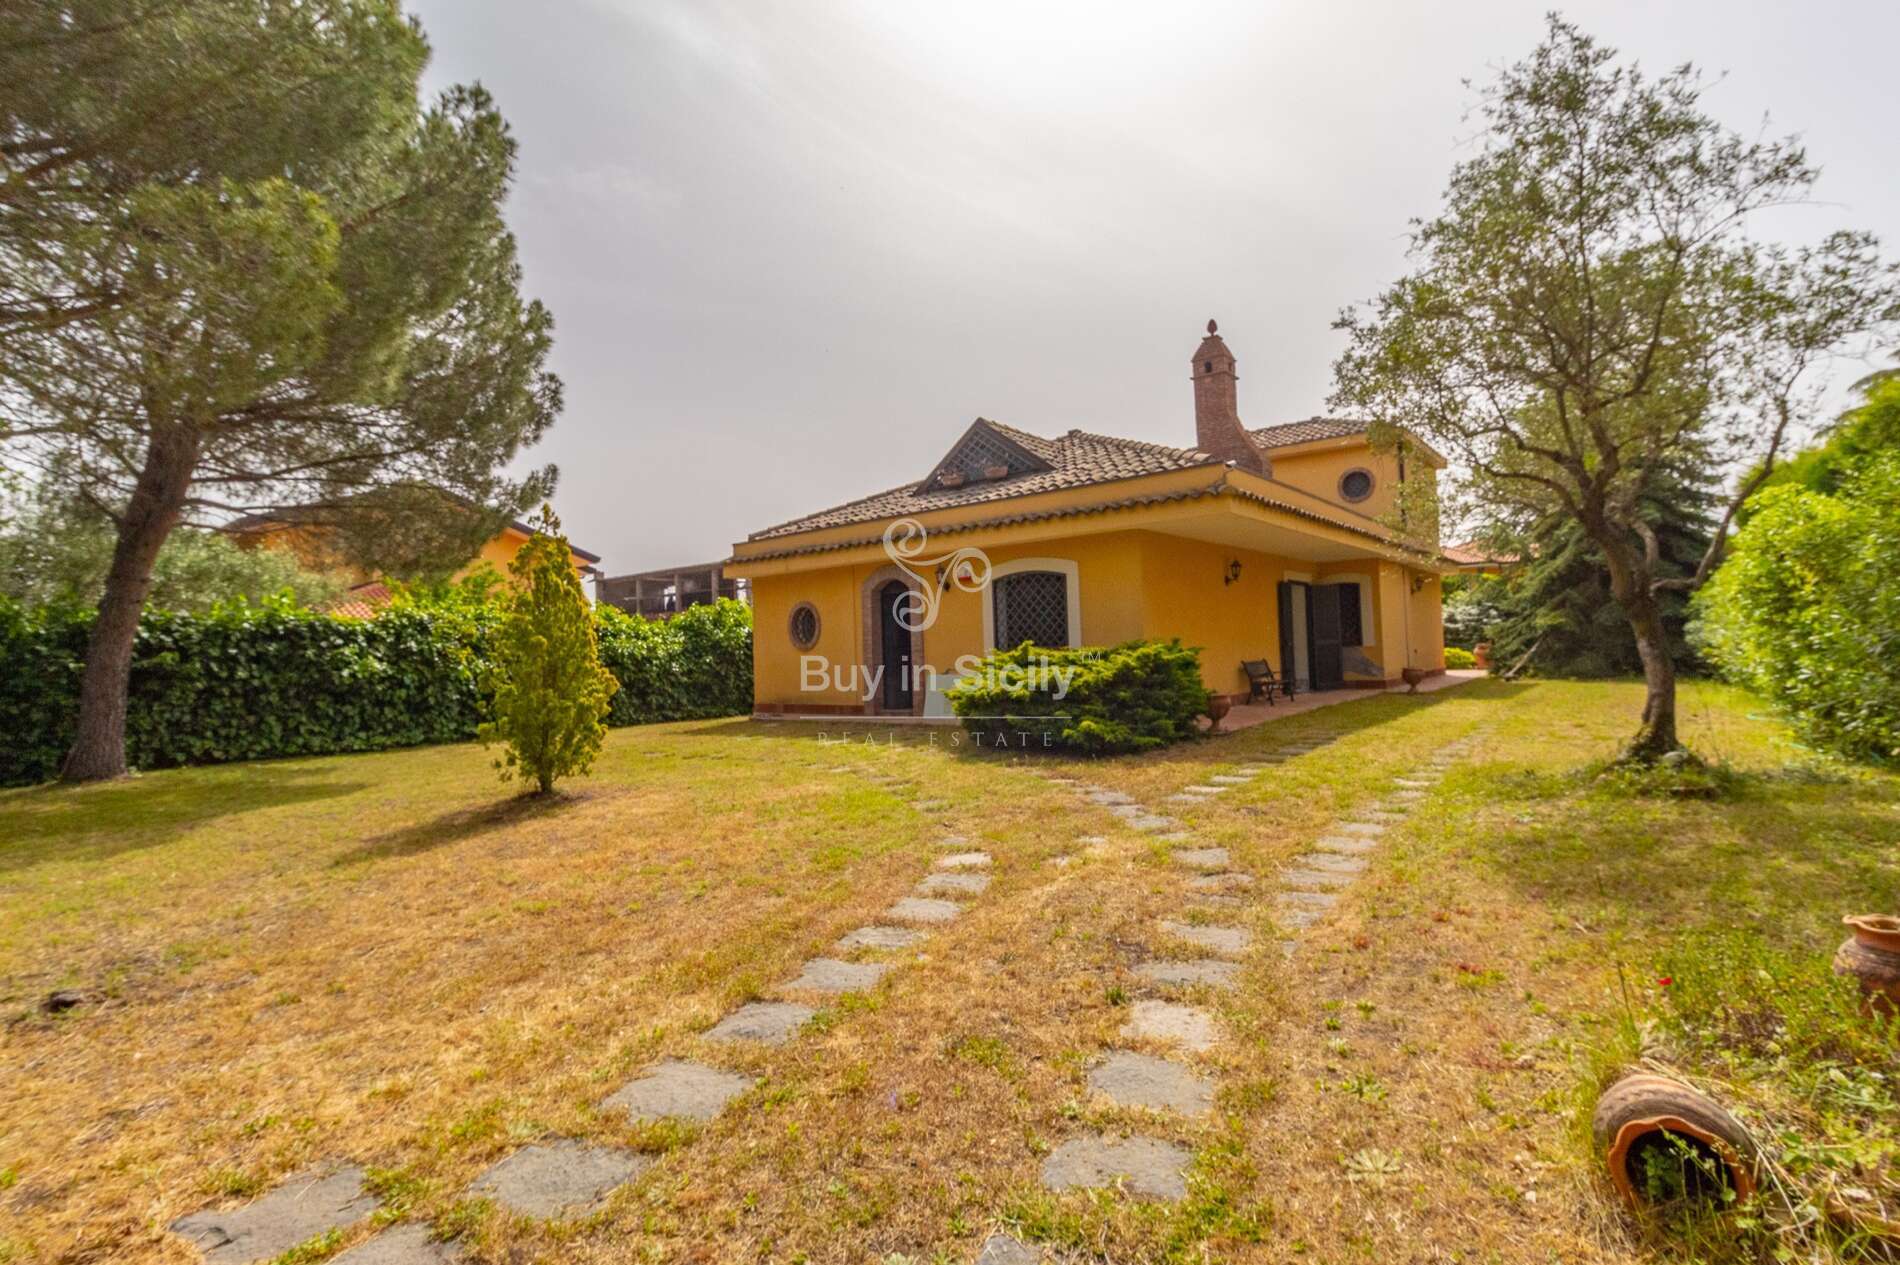 Sicilian style villa located in Pedara (Ct)